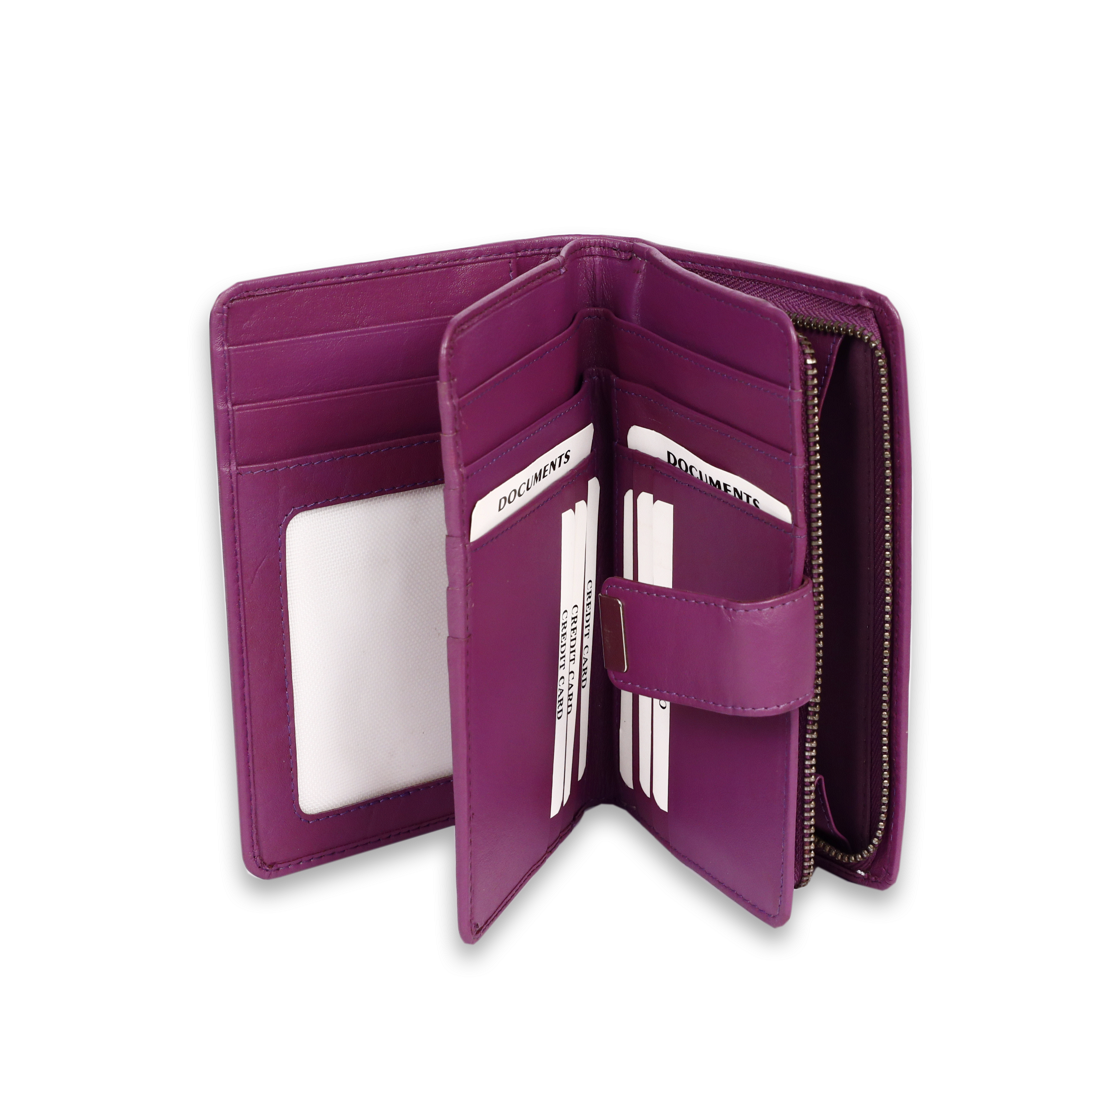 Leather Solid Purple Clip Women Wallet